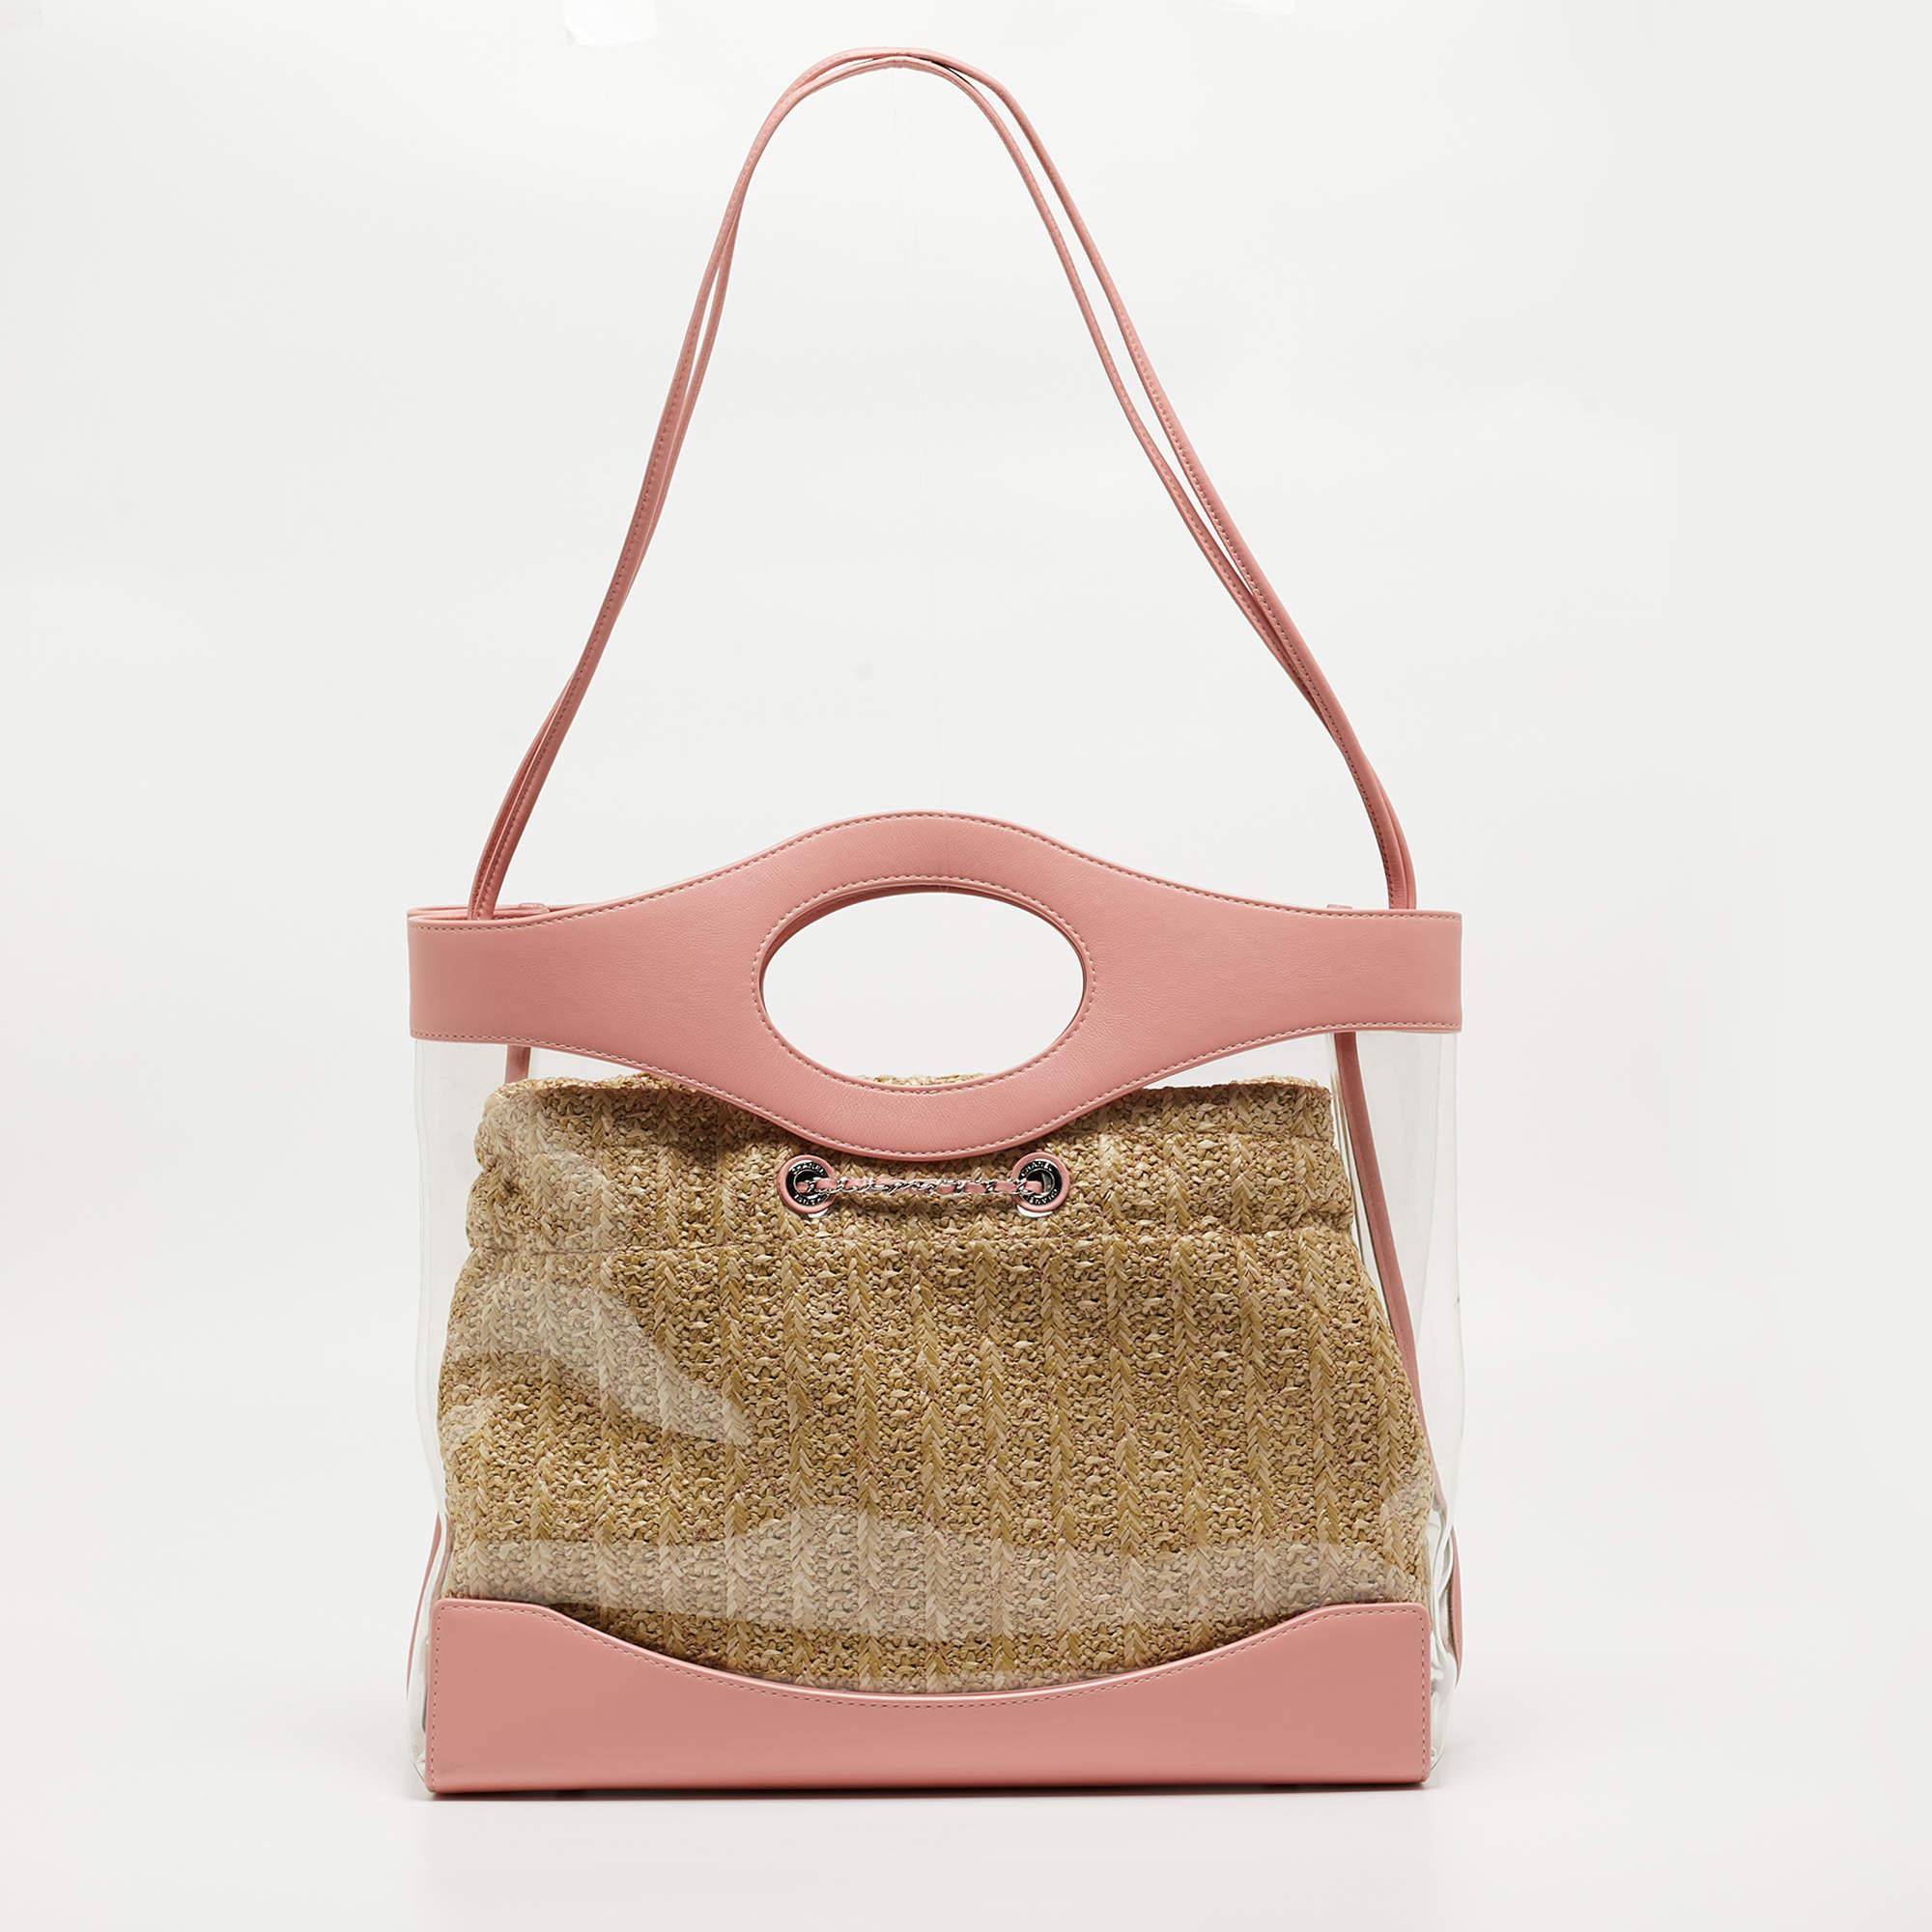 Le sac de shopping Chanel 31 respire l'élégance moderne. Le corps en PVC transparent recouvre une silhouette en osier. Les poignées et les garnitures en cuir ajoutent une touche luxueuse, tandis que l'intérieur spacieux en fait un compagnon chic et